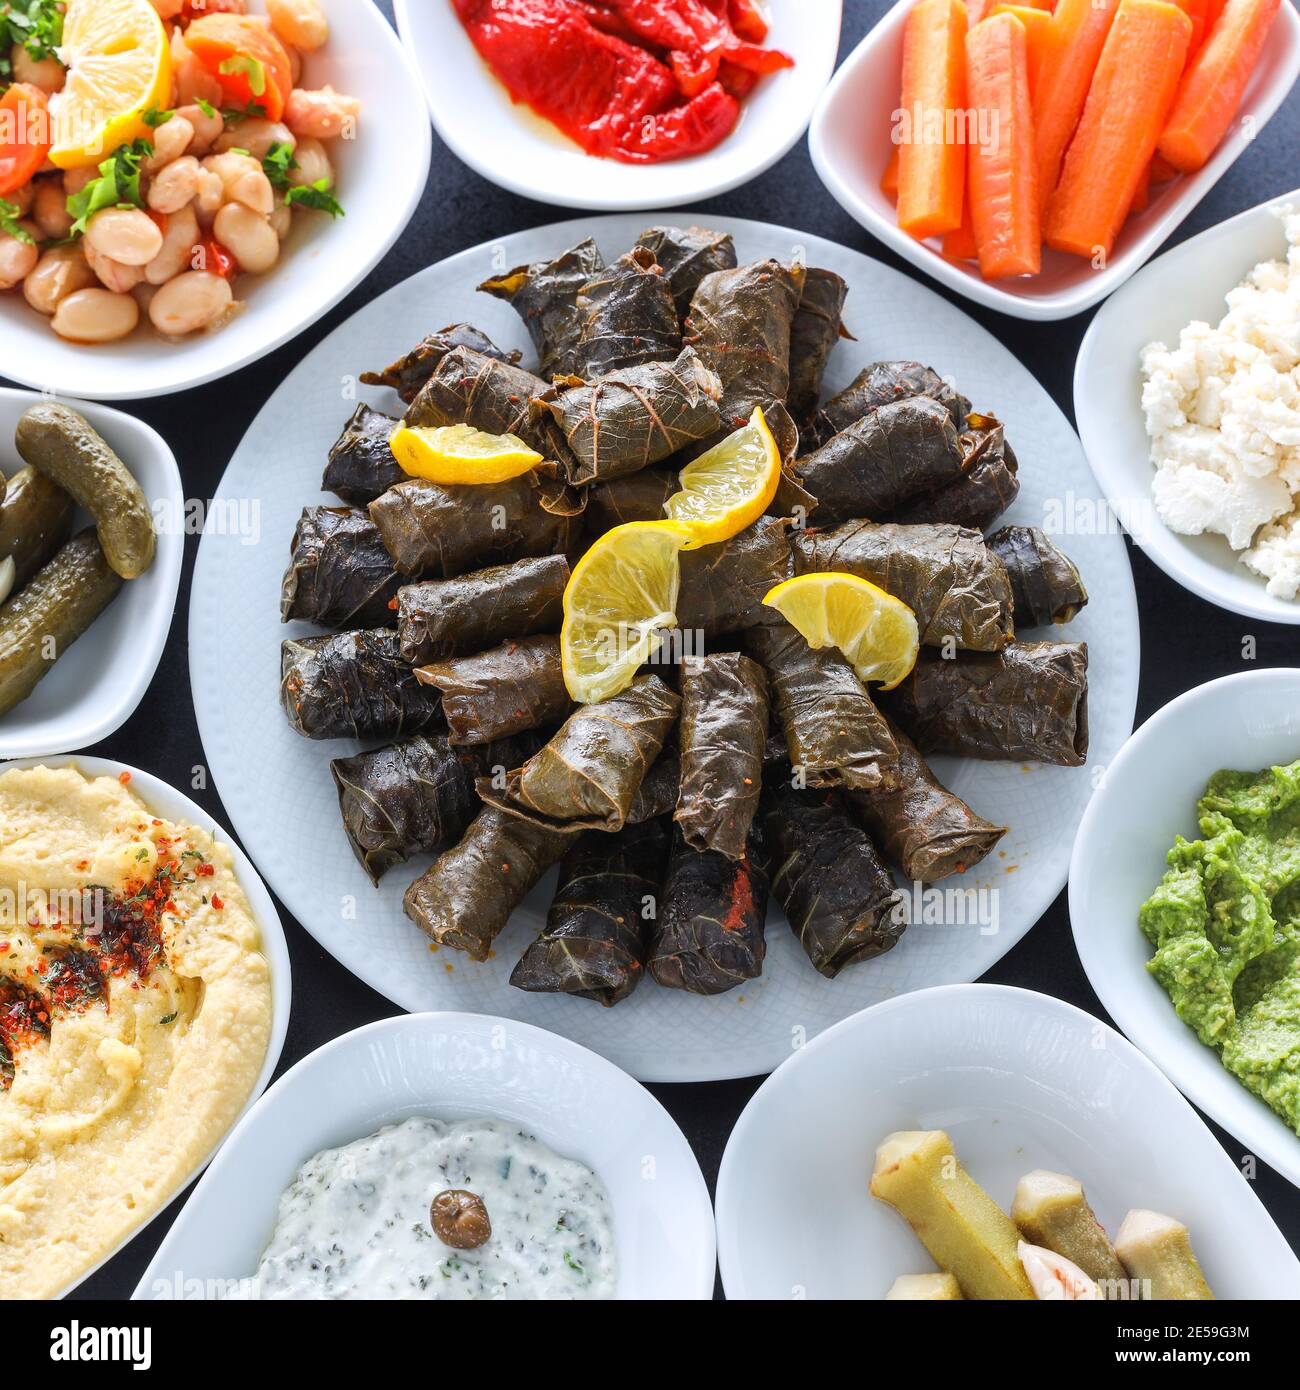 Mesa de mezze tradicional turca y griega con hojas de uva rellenas, aceitunas, hummus colorido, aperitivos fríos (con aceite de oliva) Foto de stock